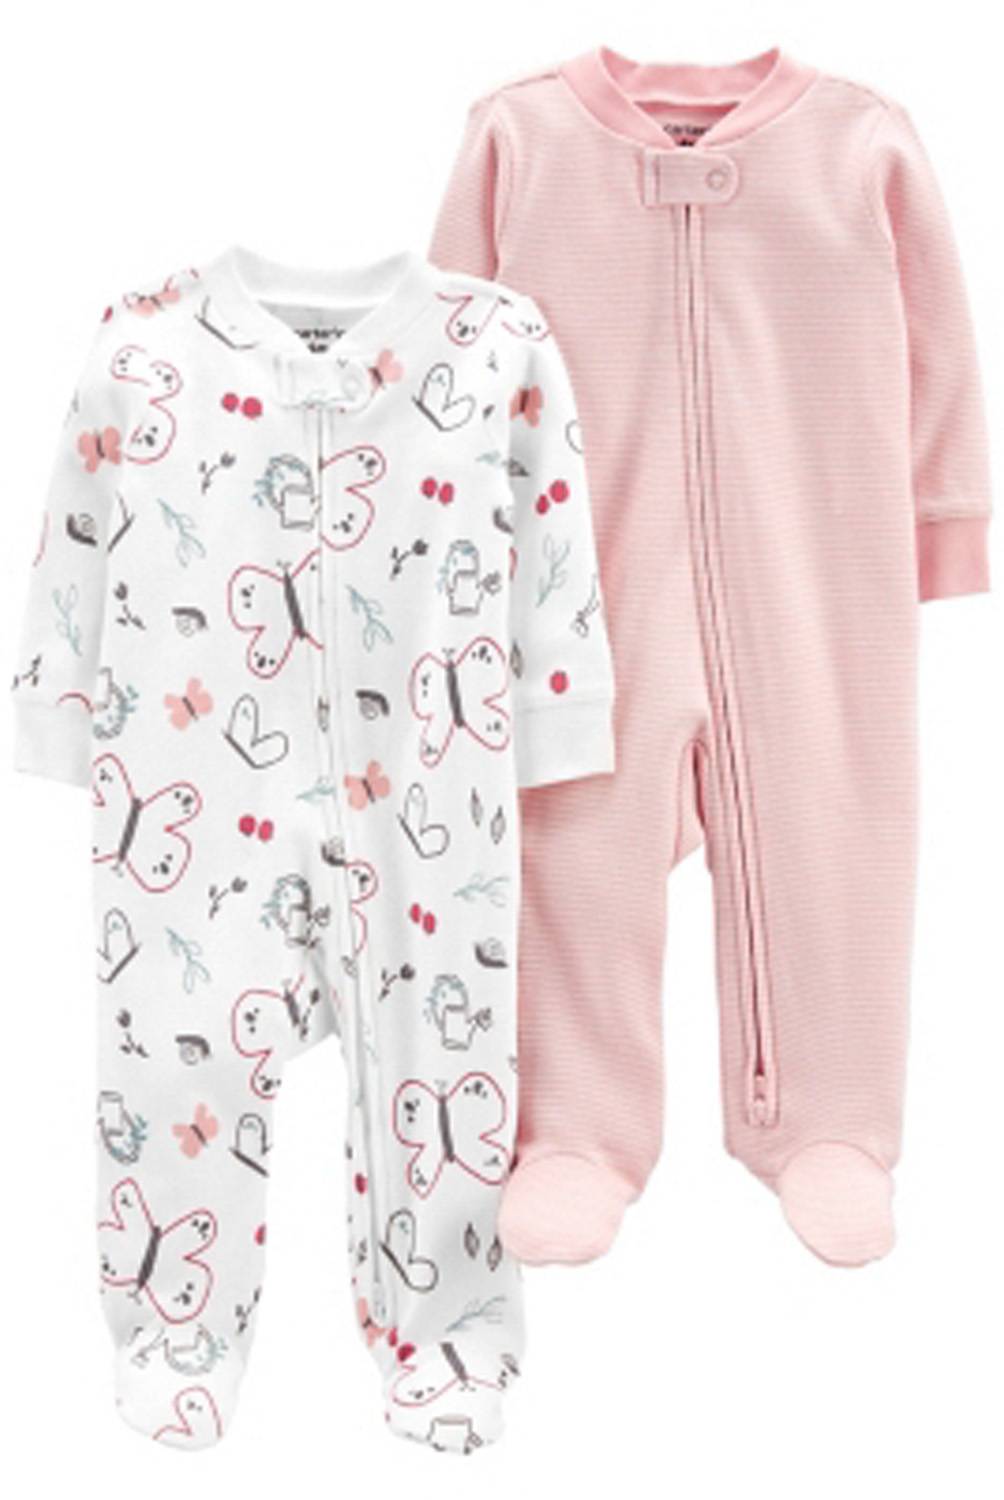 CARTER'S - Carter´s Pijama Algodón Pack 2 Unidades Bebé Niña